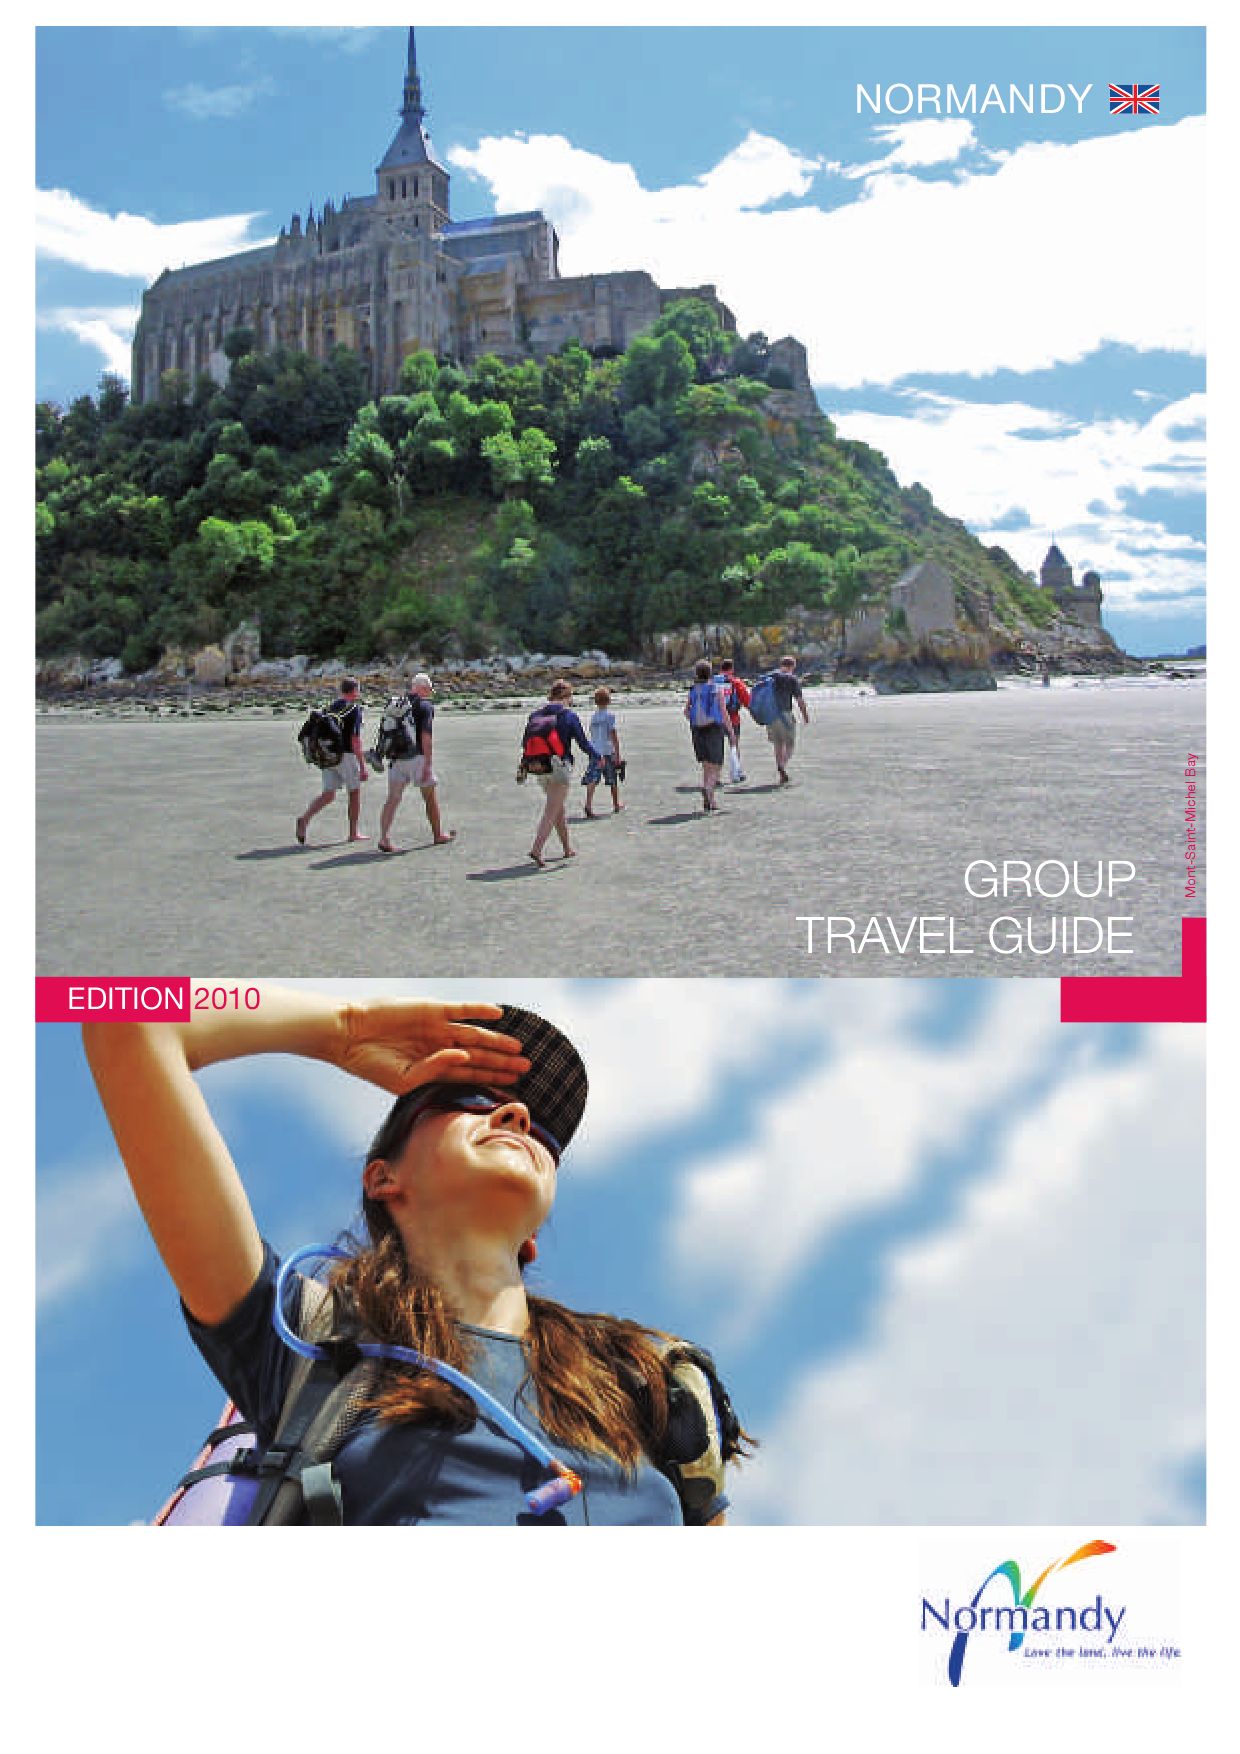 Tante De Jardin Frais Gfroup Travel Guide 2010 by norman tourisme issuu